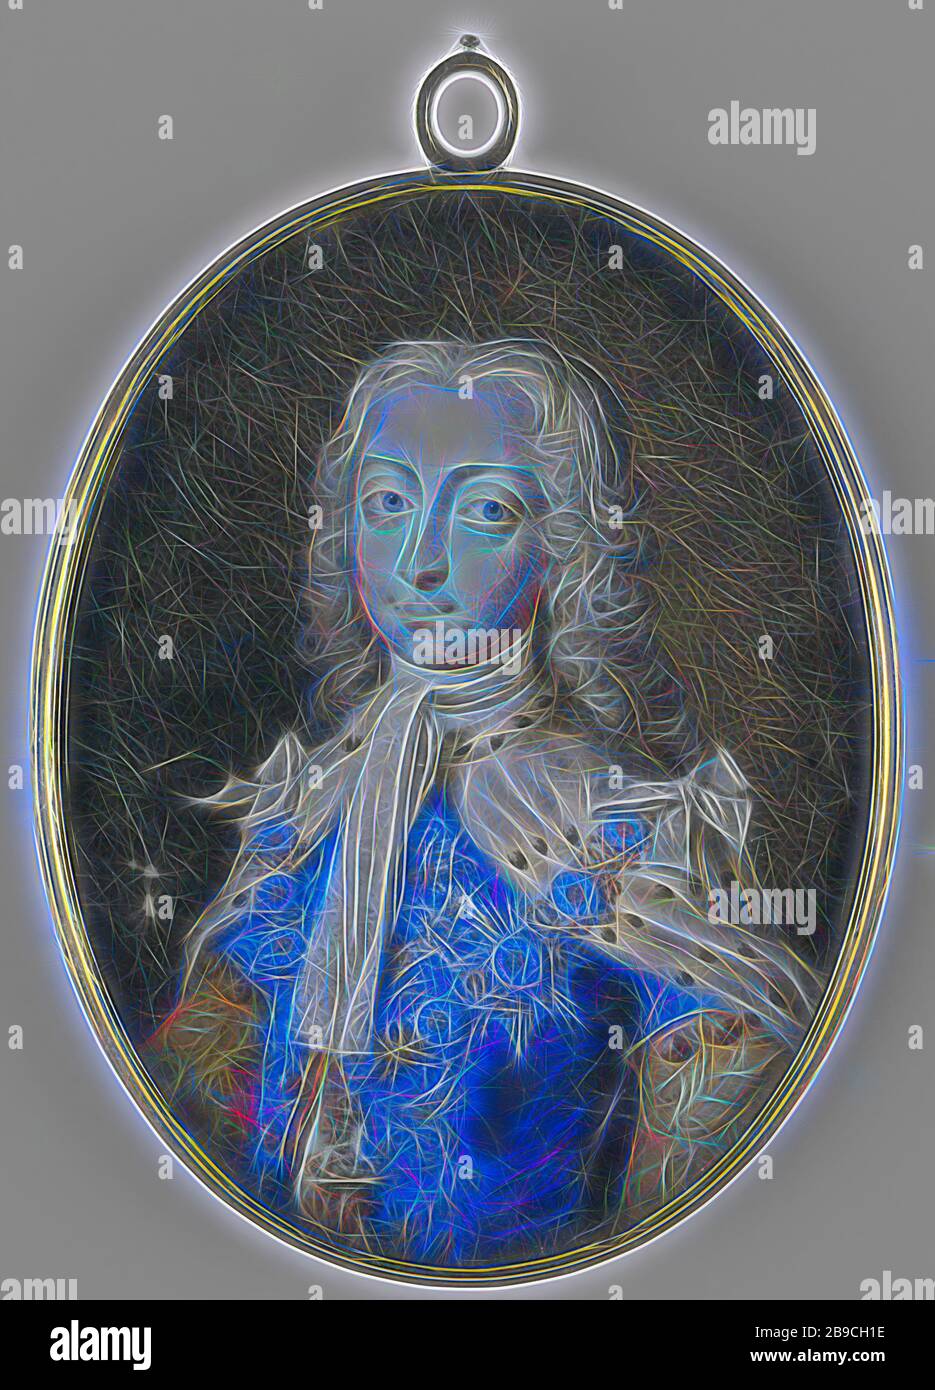 Frederick Louis (1707-51), Príncipe de Gales. Hijo del rey Jorge II, Retrato de Federico Luis (1707-51), Príncipe de Gales. Hijo del rey Jorge II A mitad de camino, a la izquierda, mirando. A un original de Philippe Mercier. Frederik (Príncipe de Gales), anónimo, Inglaterra, 1735 - 1740, marfil, metal, vidrio, h 7.5 cm × w 5.7 cm h 8.5 cm × w 5.9 cm × d 0.5 cm, Reimaged by Gibon, diseño de cálido y alegre resplandor de brillo y rayos de luz. Arte clásico reinventado con un toque moderno. Fotografía inspirada en el futurismo, abrazando la energía dinámica de la tecnología moderna, el movimiento, la velocidad y revoluciona cu Foto de stock